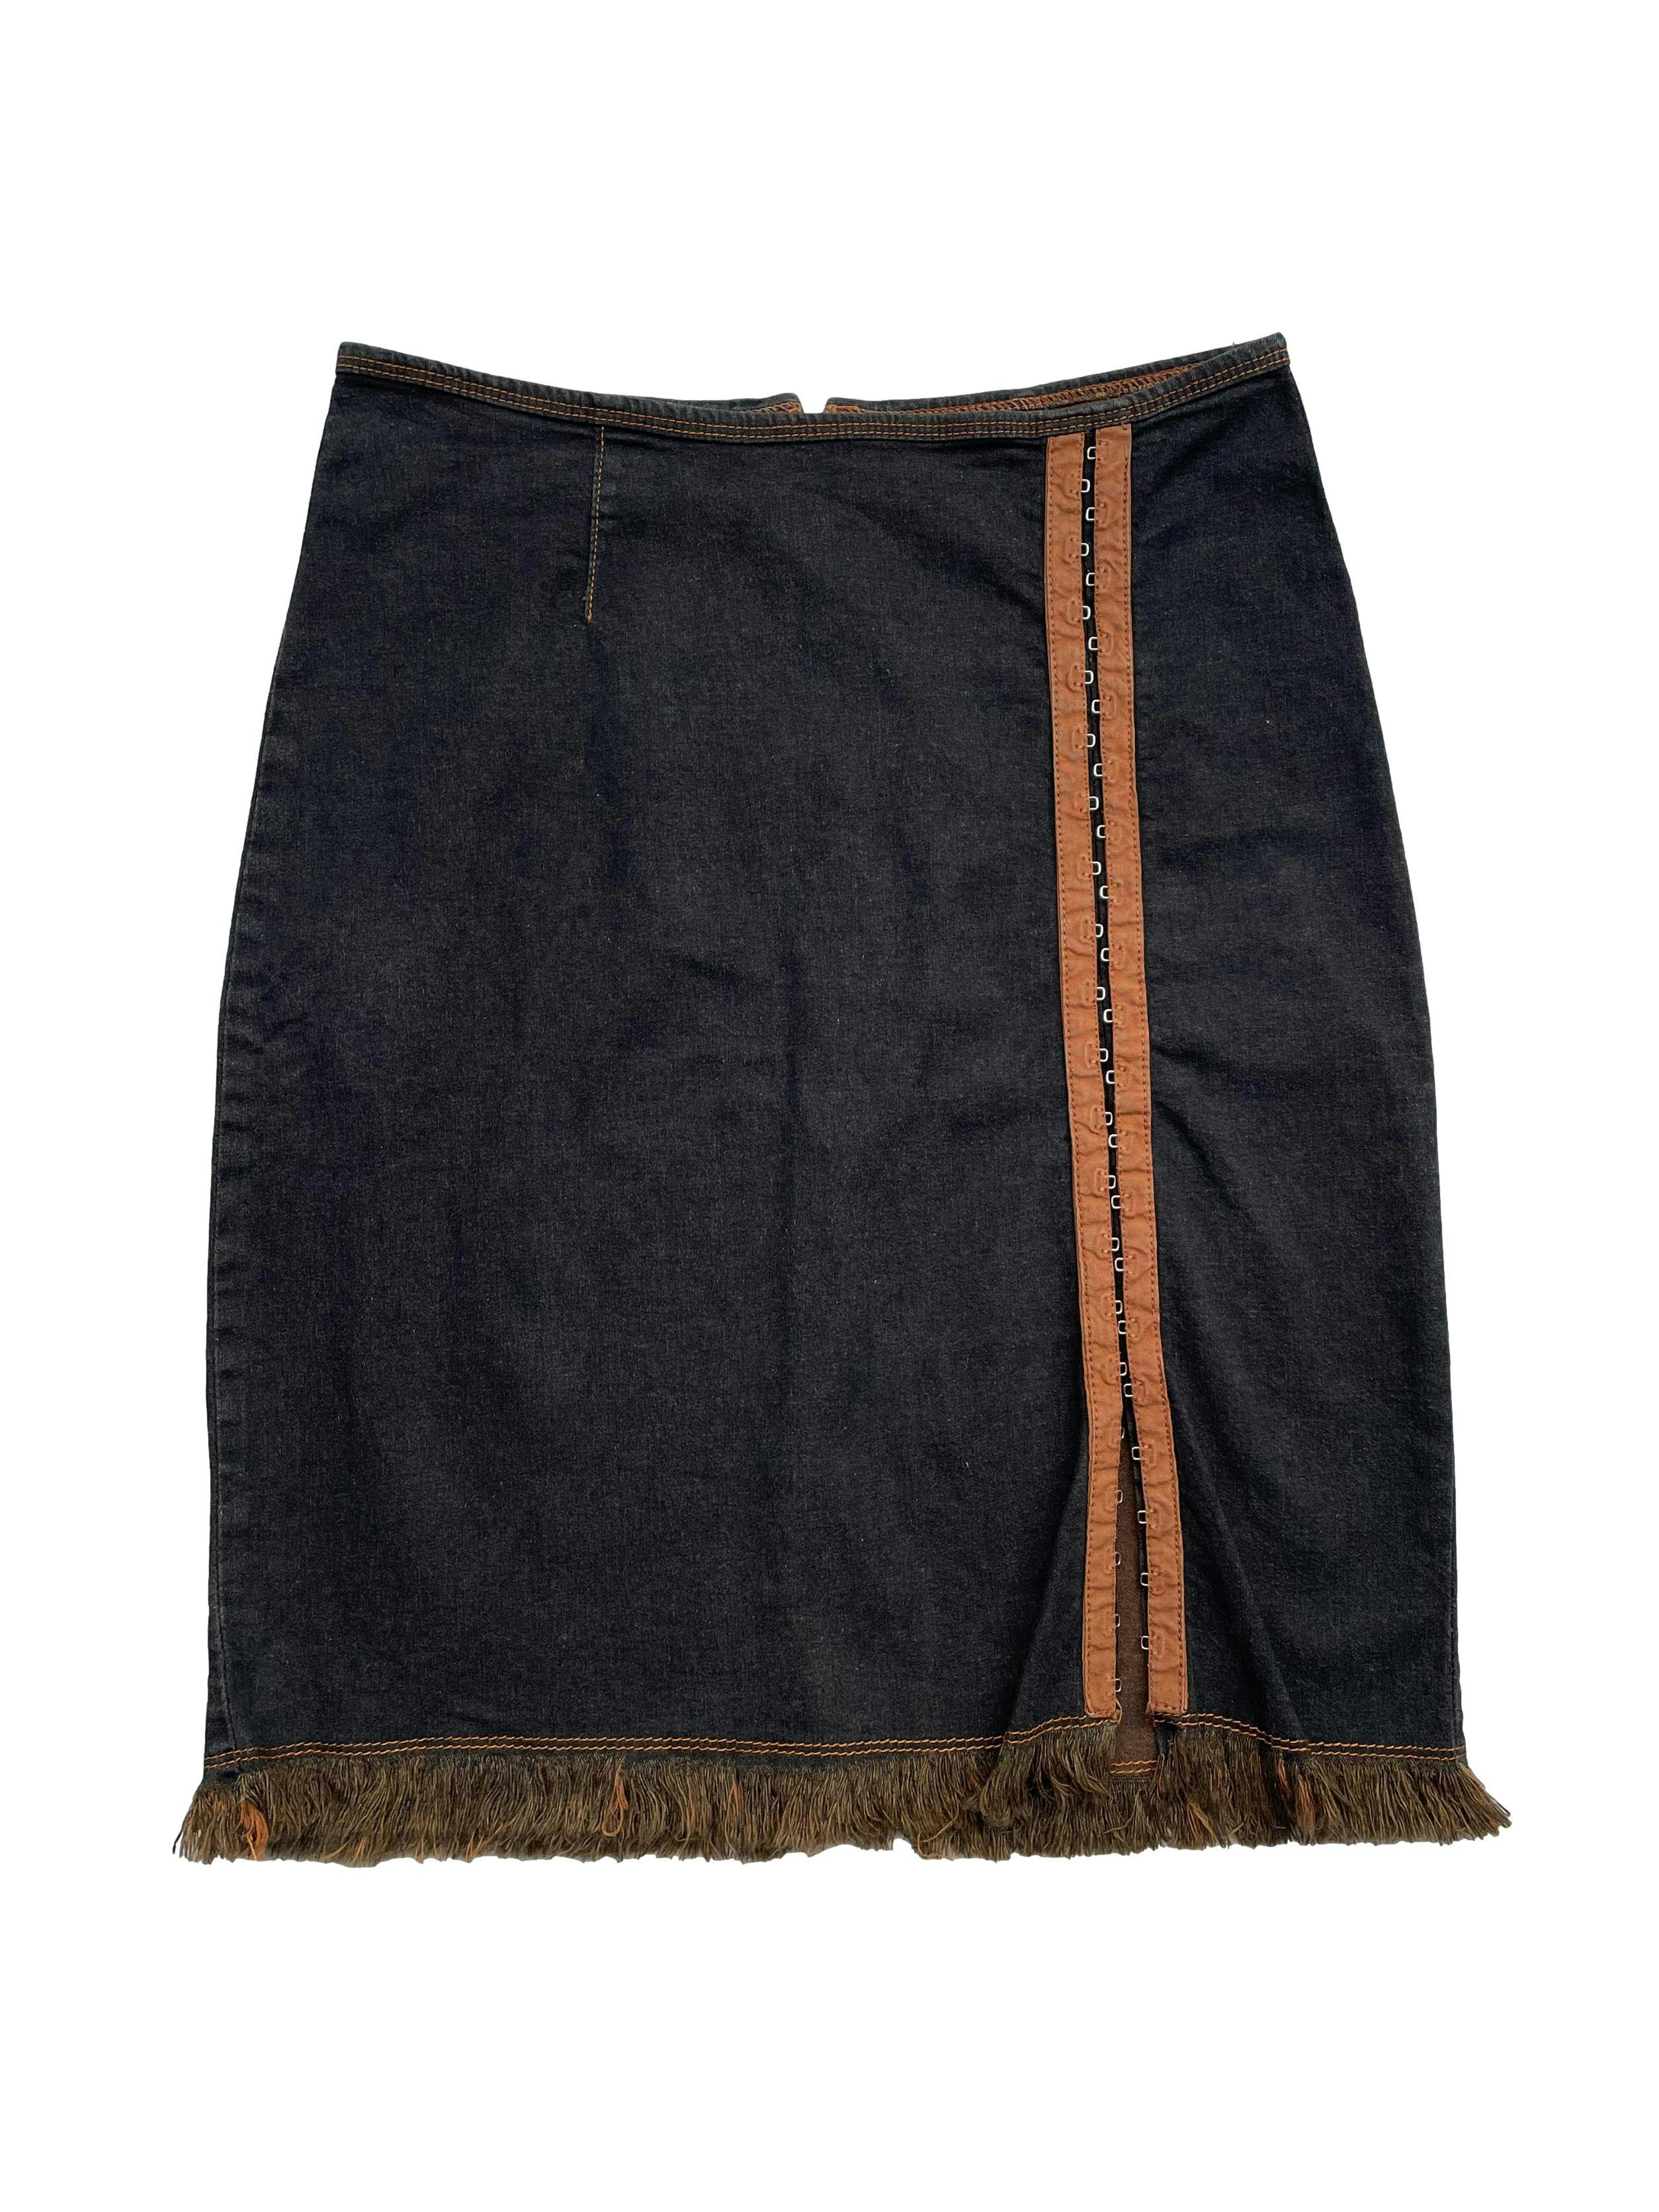 Falda vintage de jean stretch con cierre posterior, abertura con corchetes y basta desflecada. Cintura 70cm Largo 51cm